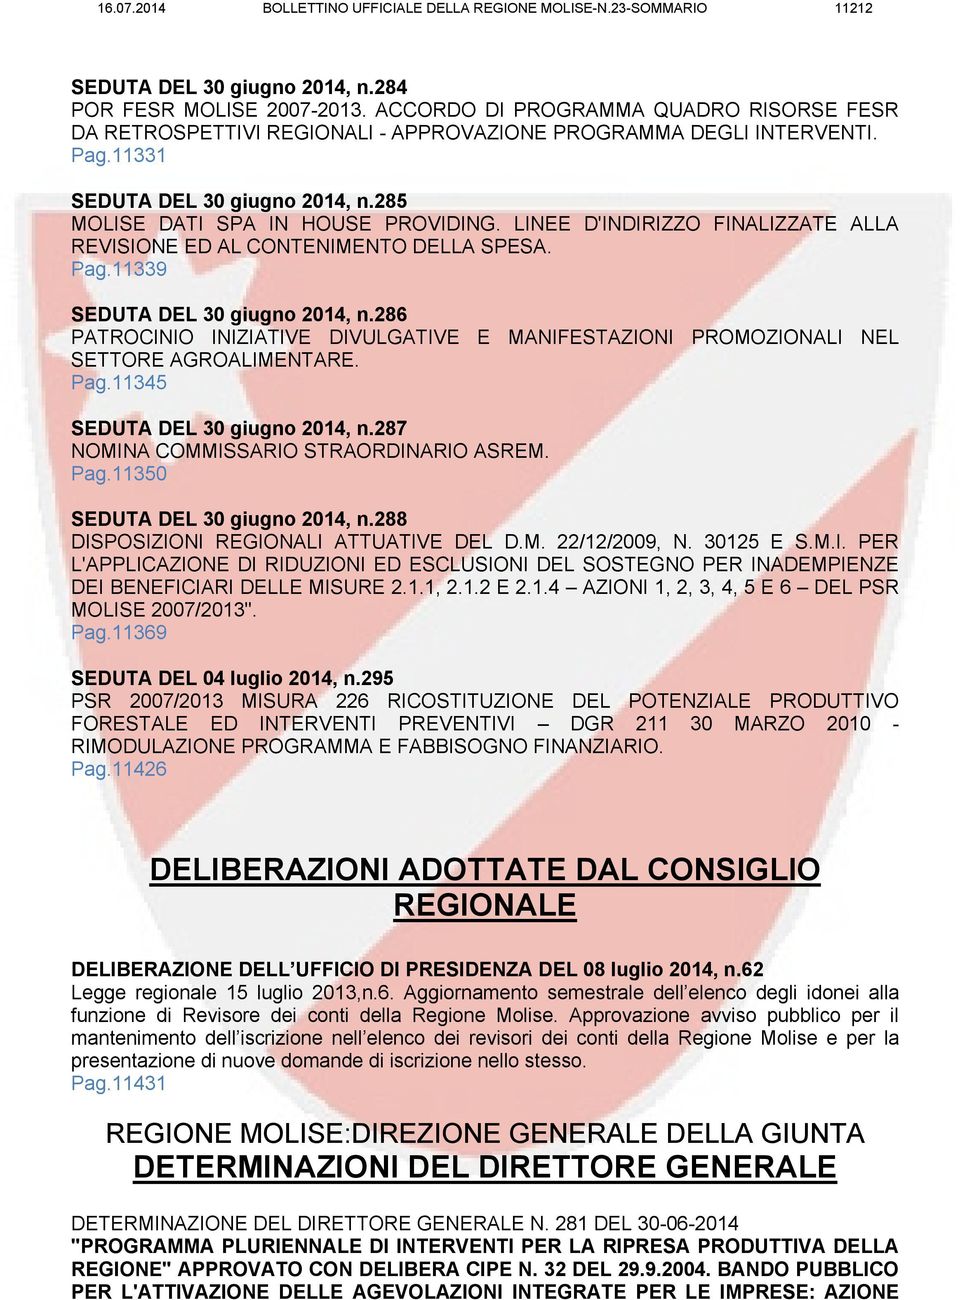 LINEE D'INDIRIZZO FINALIZZATE ALLA REVISIONE ED AL CONTENIMENTO DELLA SPESA. Pag.11339 SEDUTA DEL 30 giugno 2014, n.